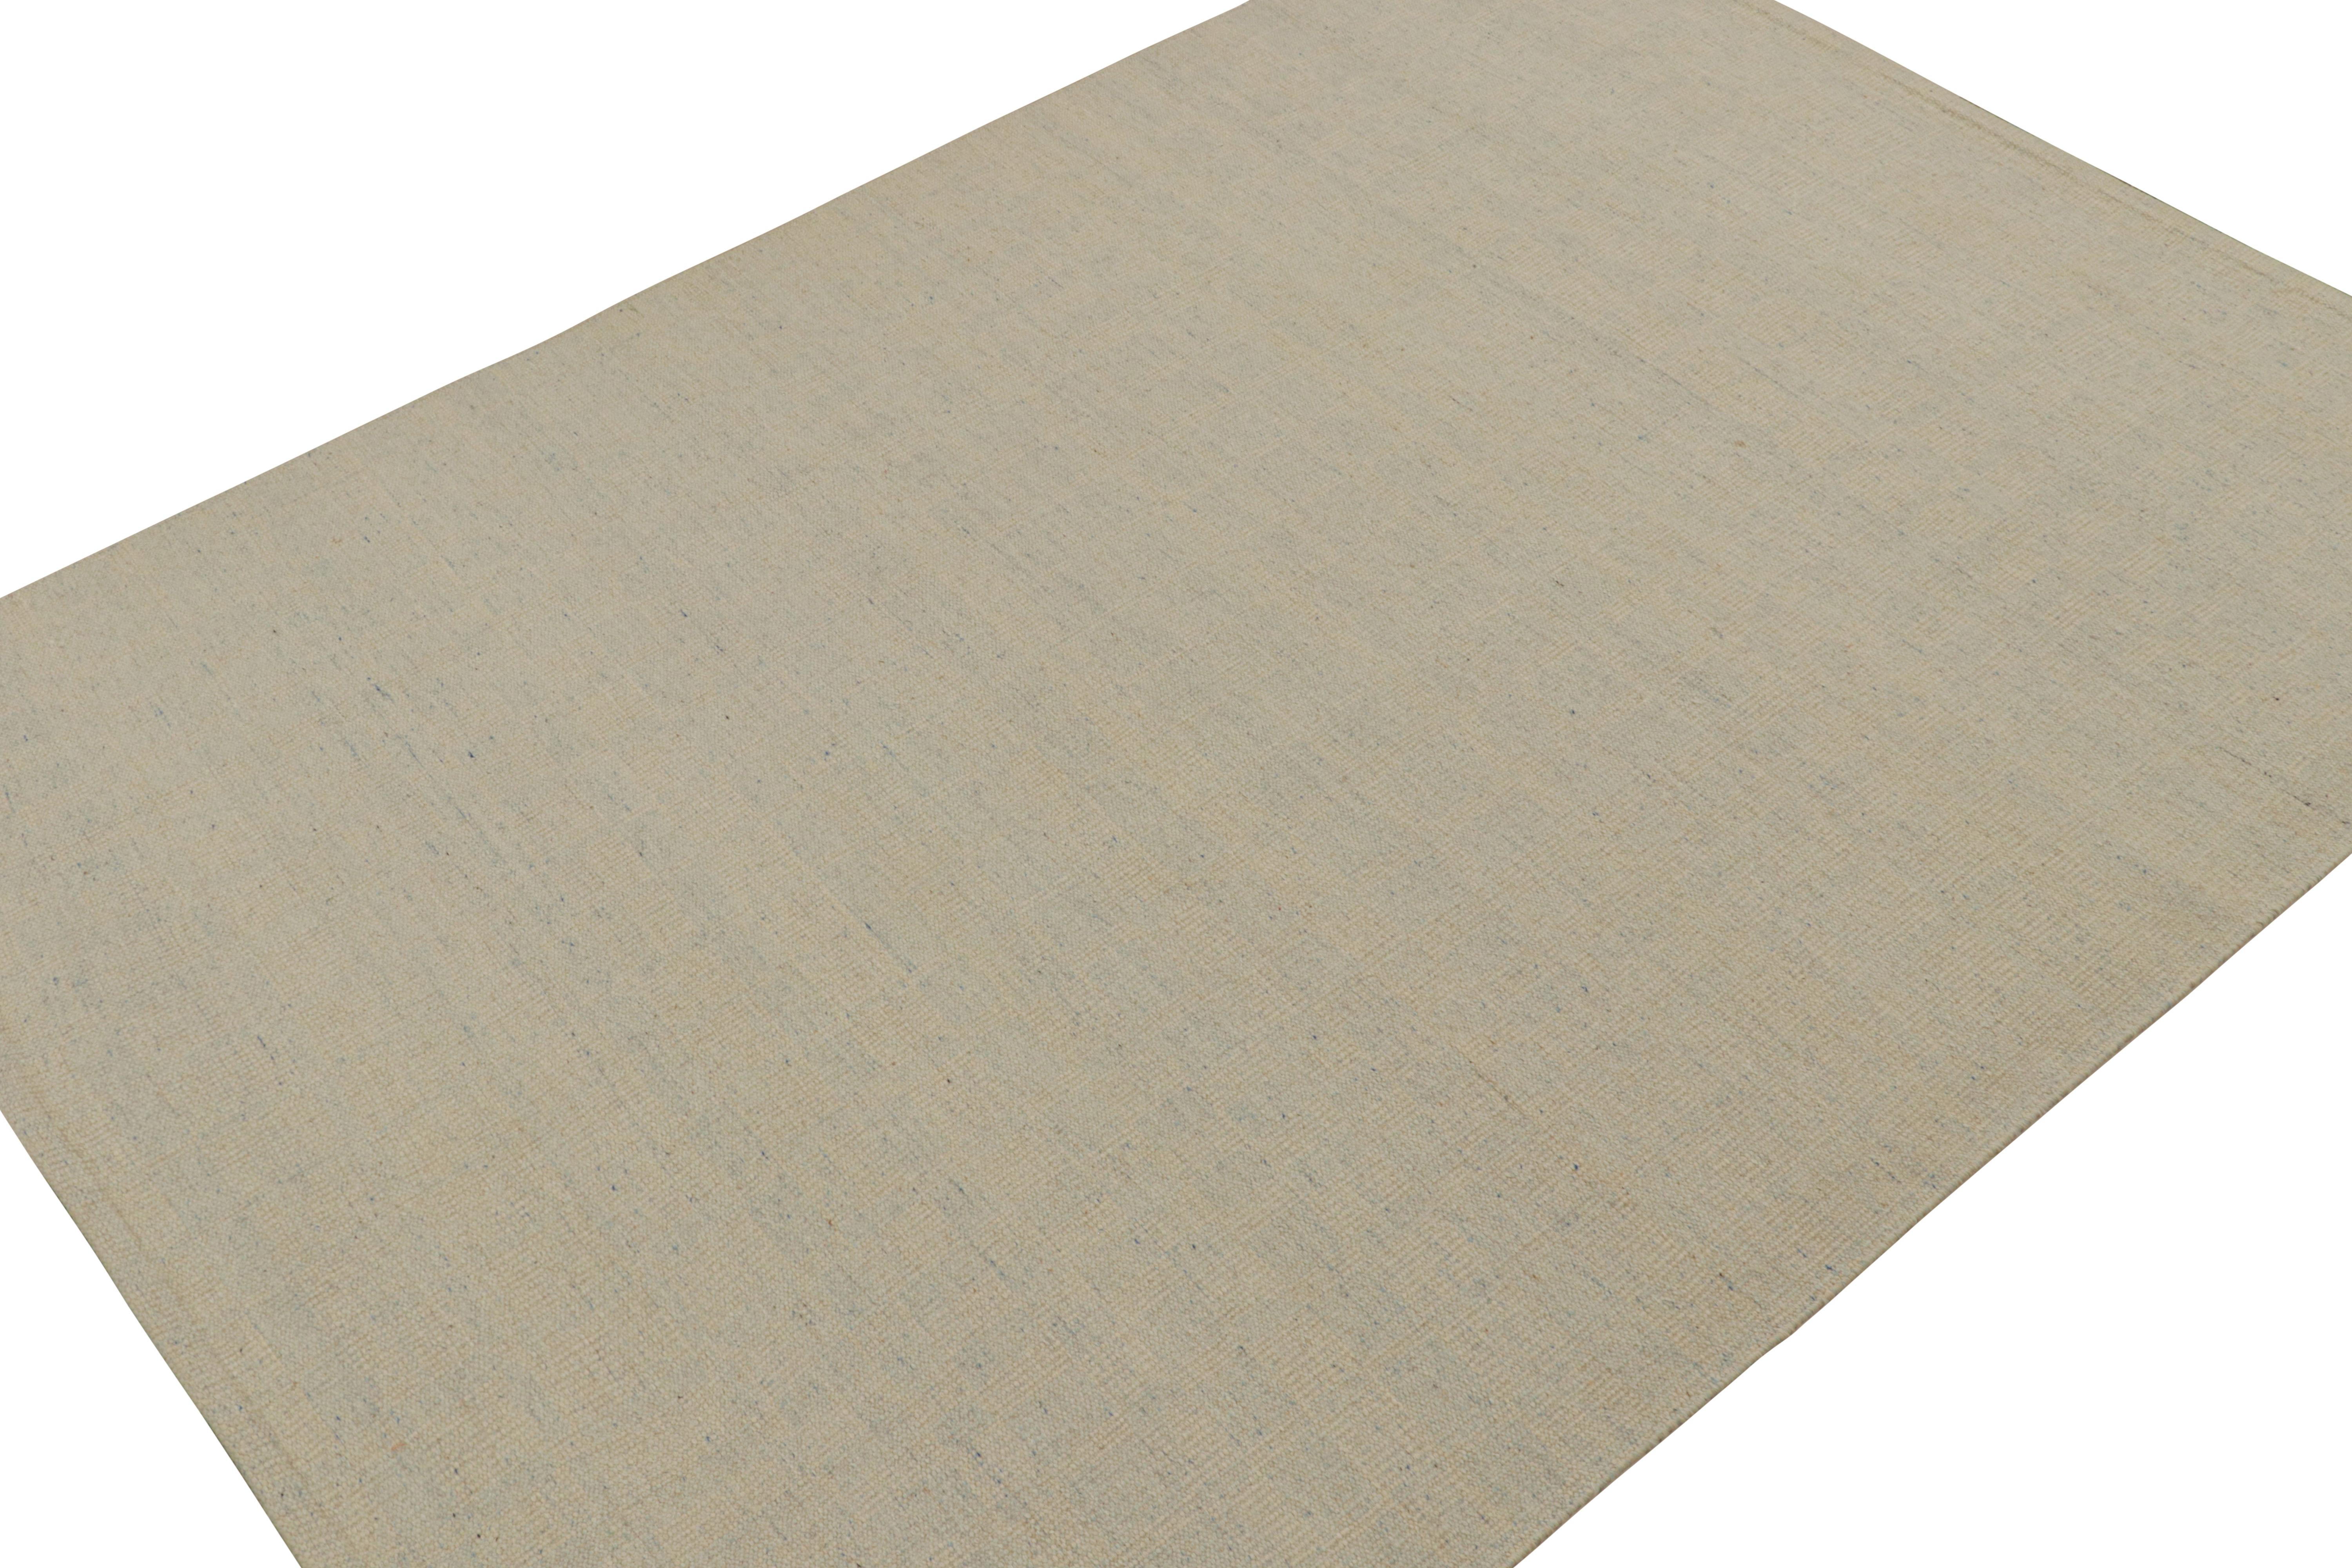 Ein eleganter 9x12 Kelim-Teppich im schwedischen Stil aus unserer preisgekrönten skandinavischen Flachgewebe-Kollektion. Handgewebt aus Wolle, Baumwolle und ungefärbtem Naturgarn.

Über das Design: 

Dieser Teppich zeichnet sich durch unser